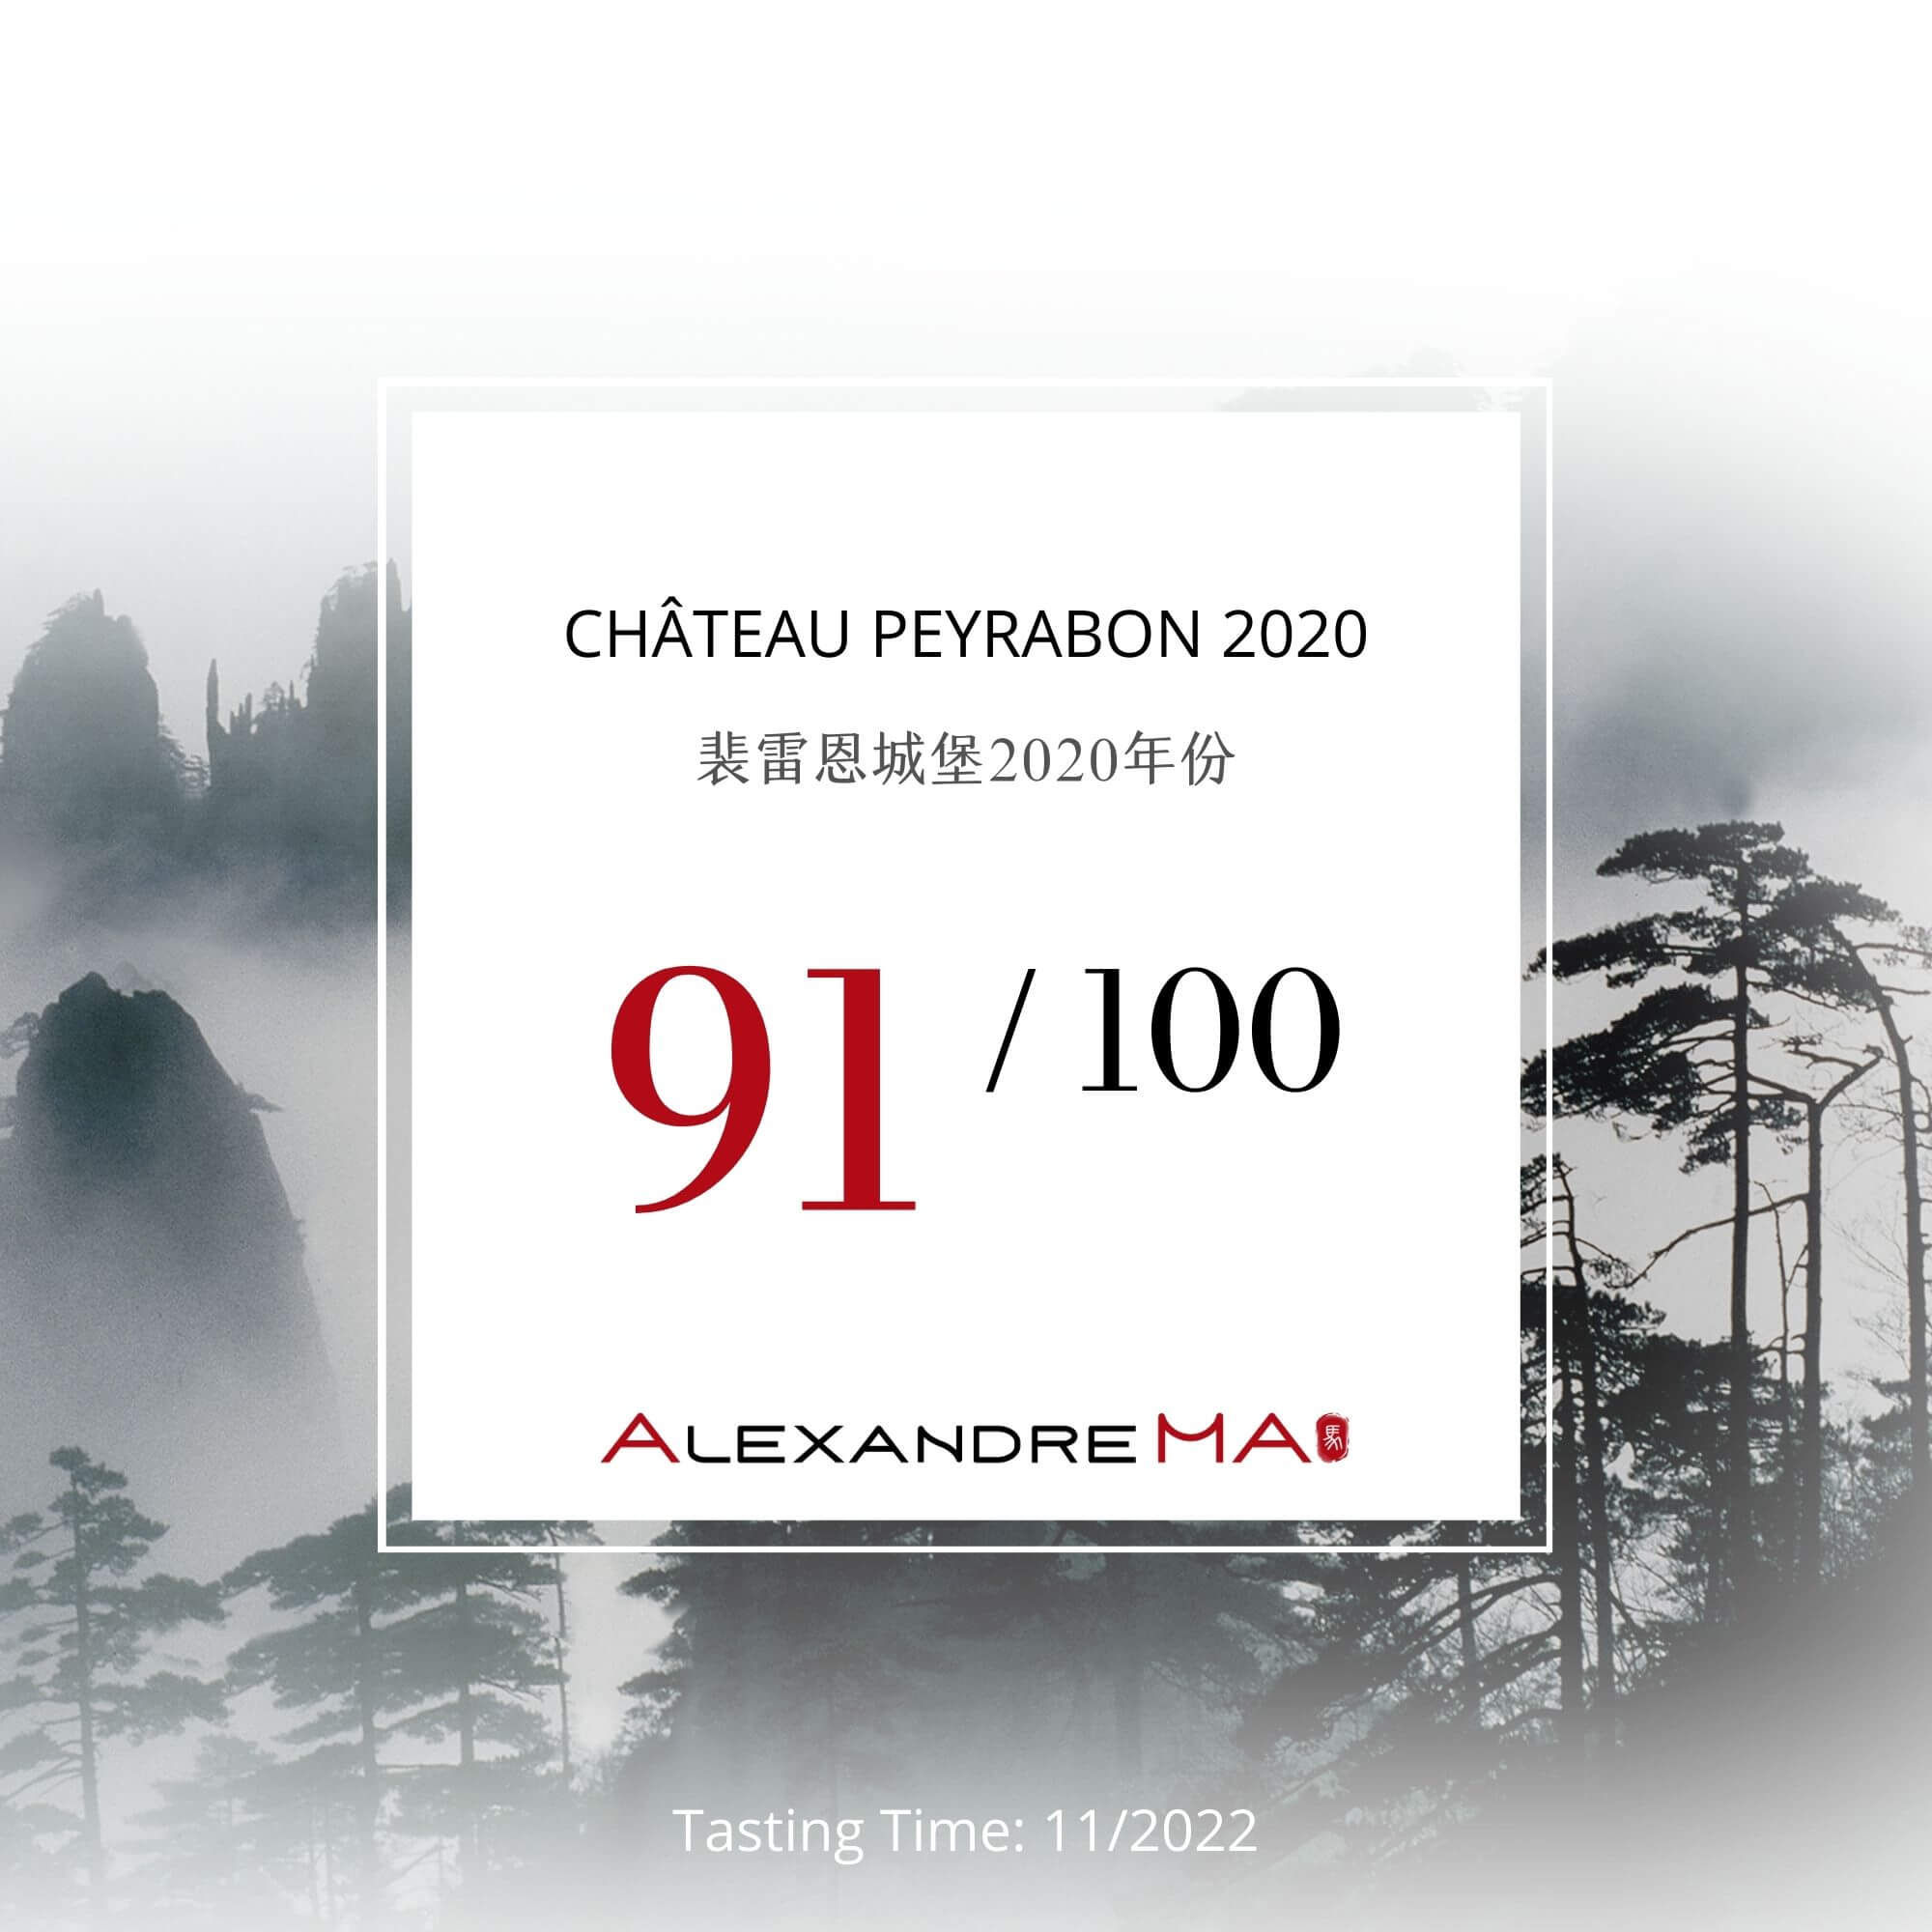 Château Peyrabon 2020 - Alexandre MA